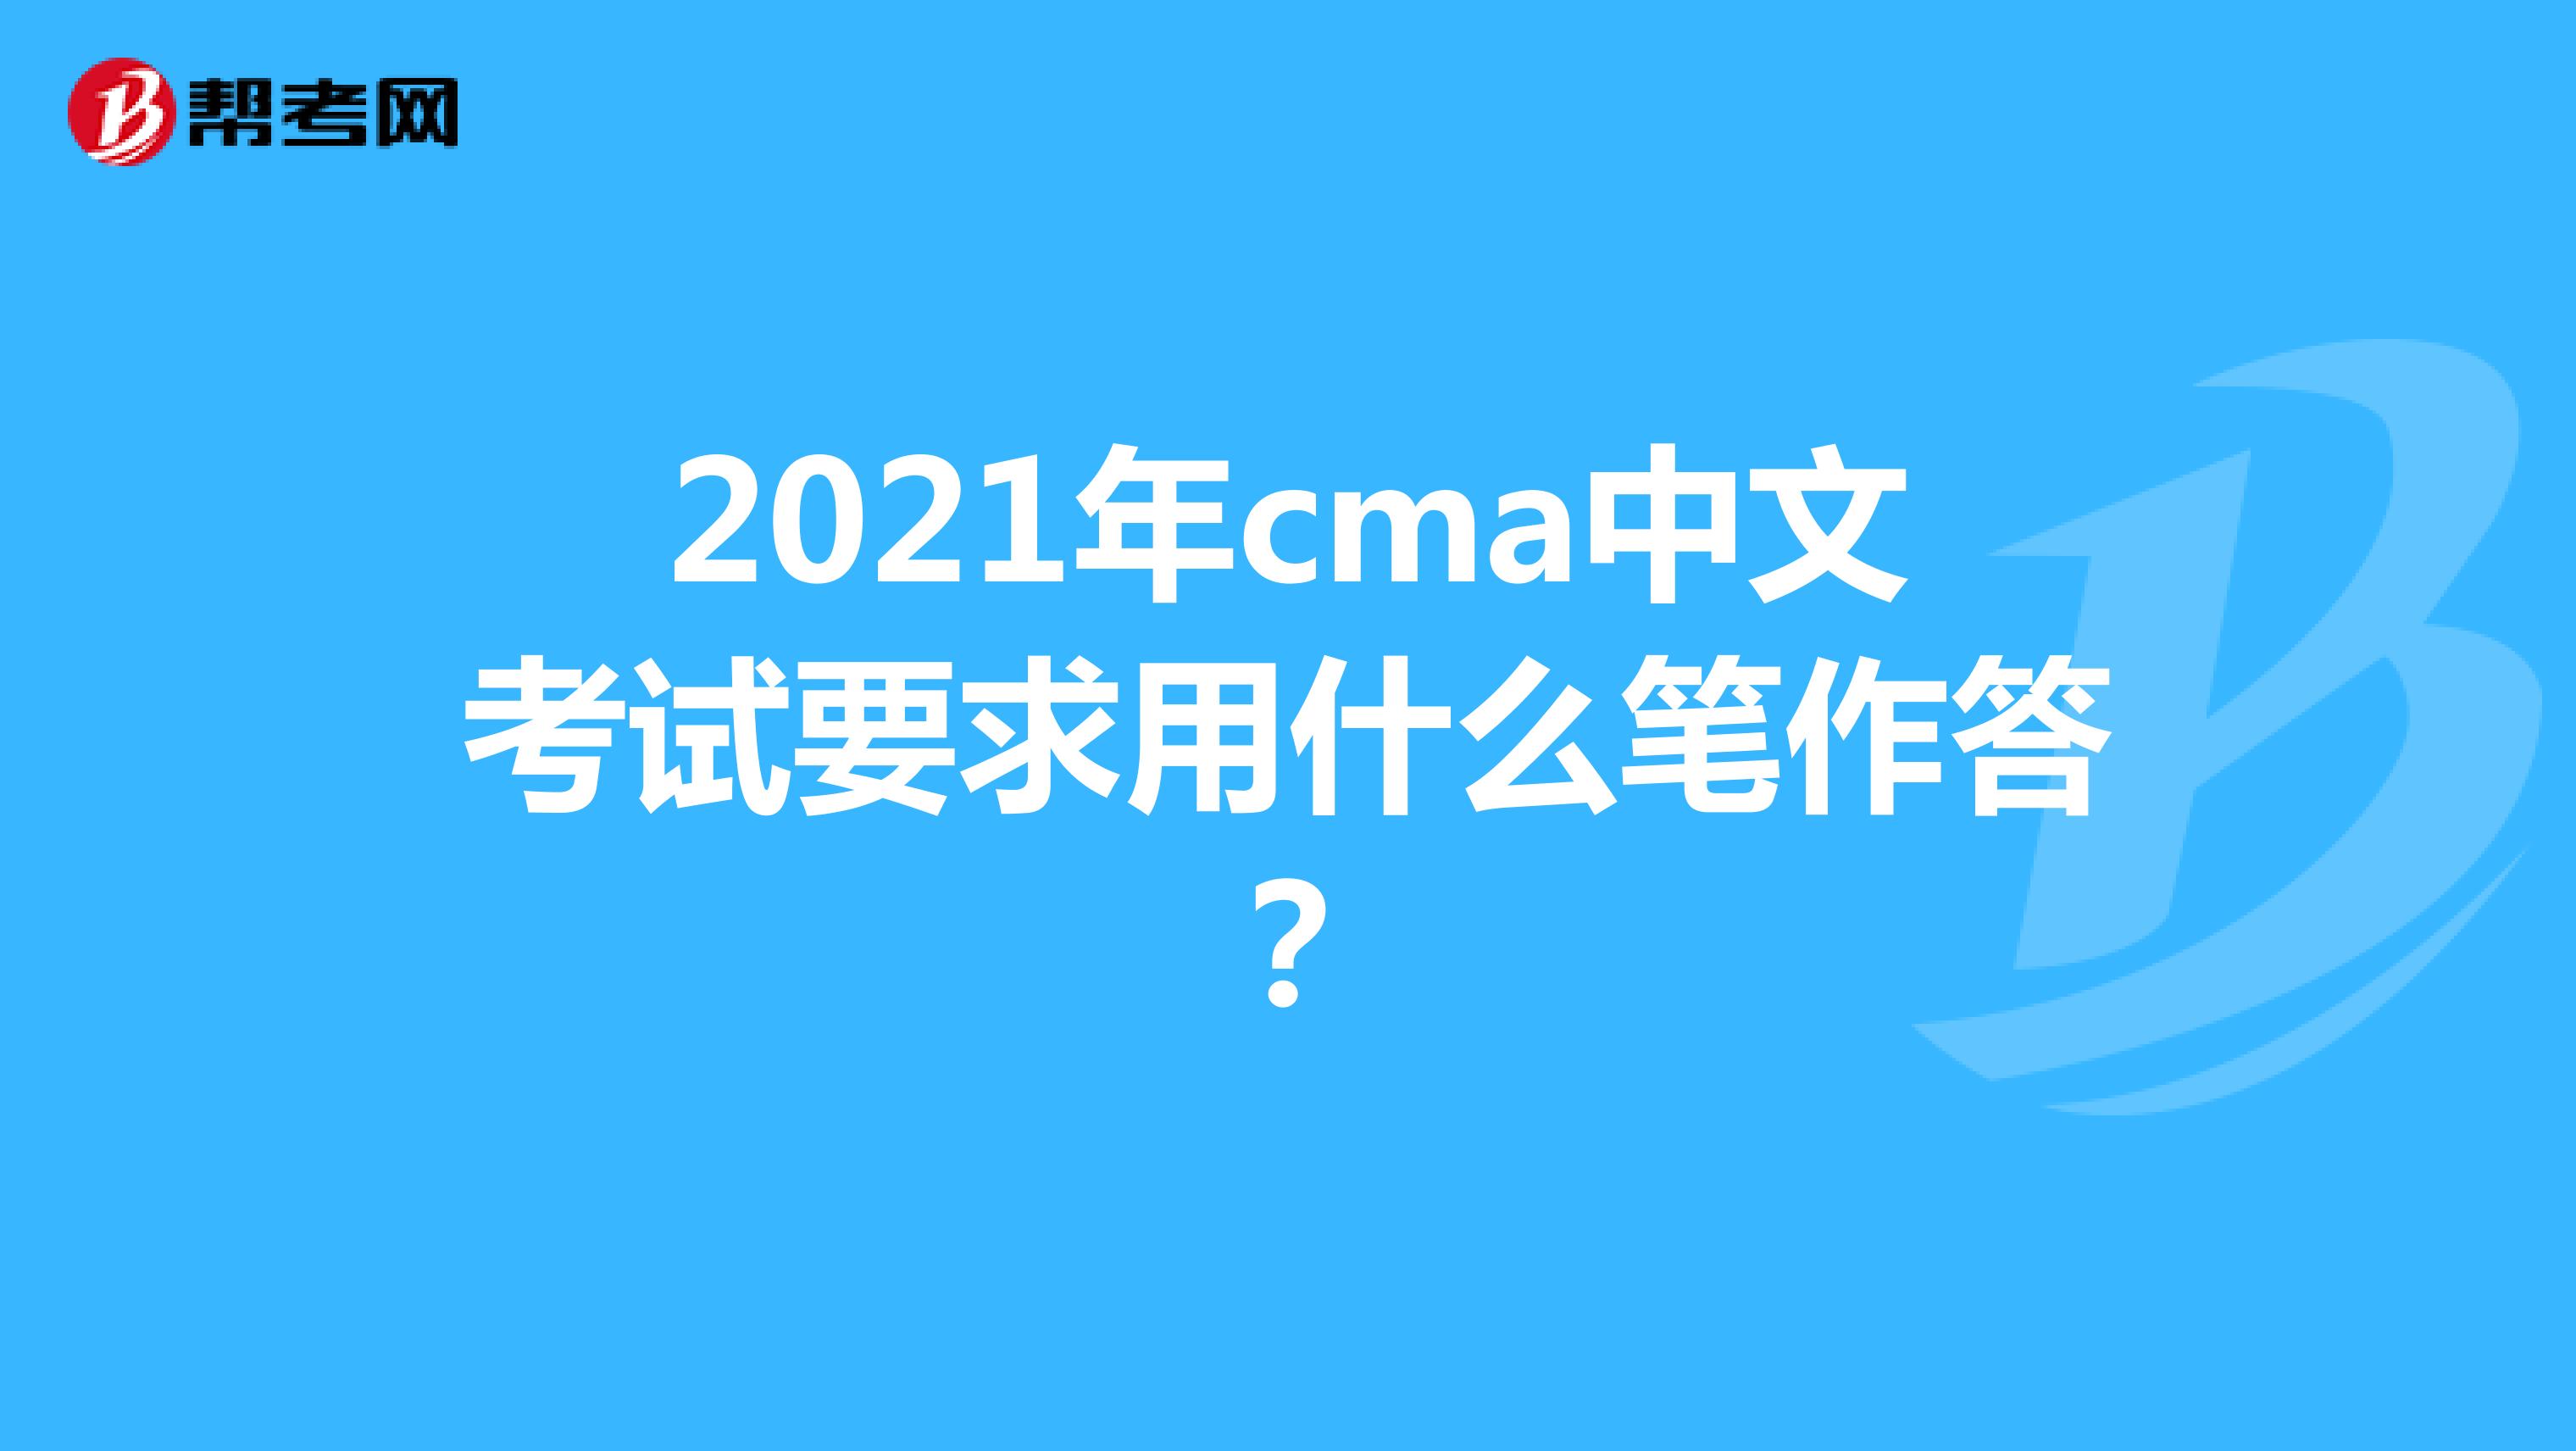 2021年cma中文考试要求用什么笔作答？